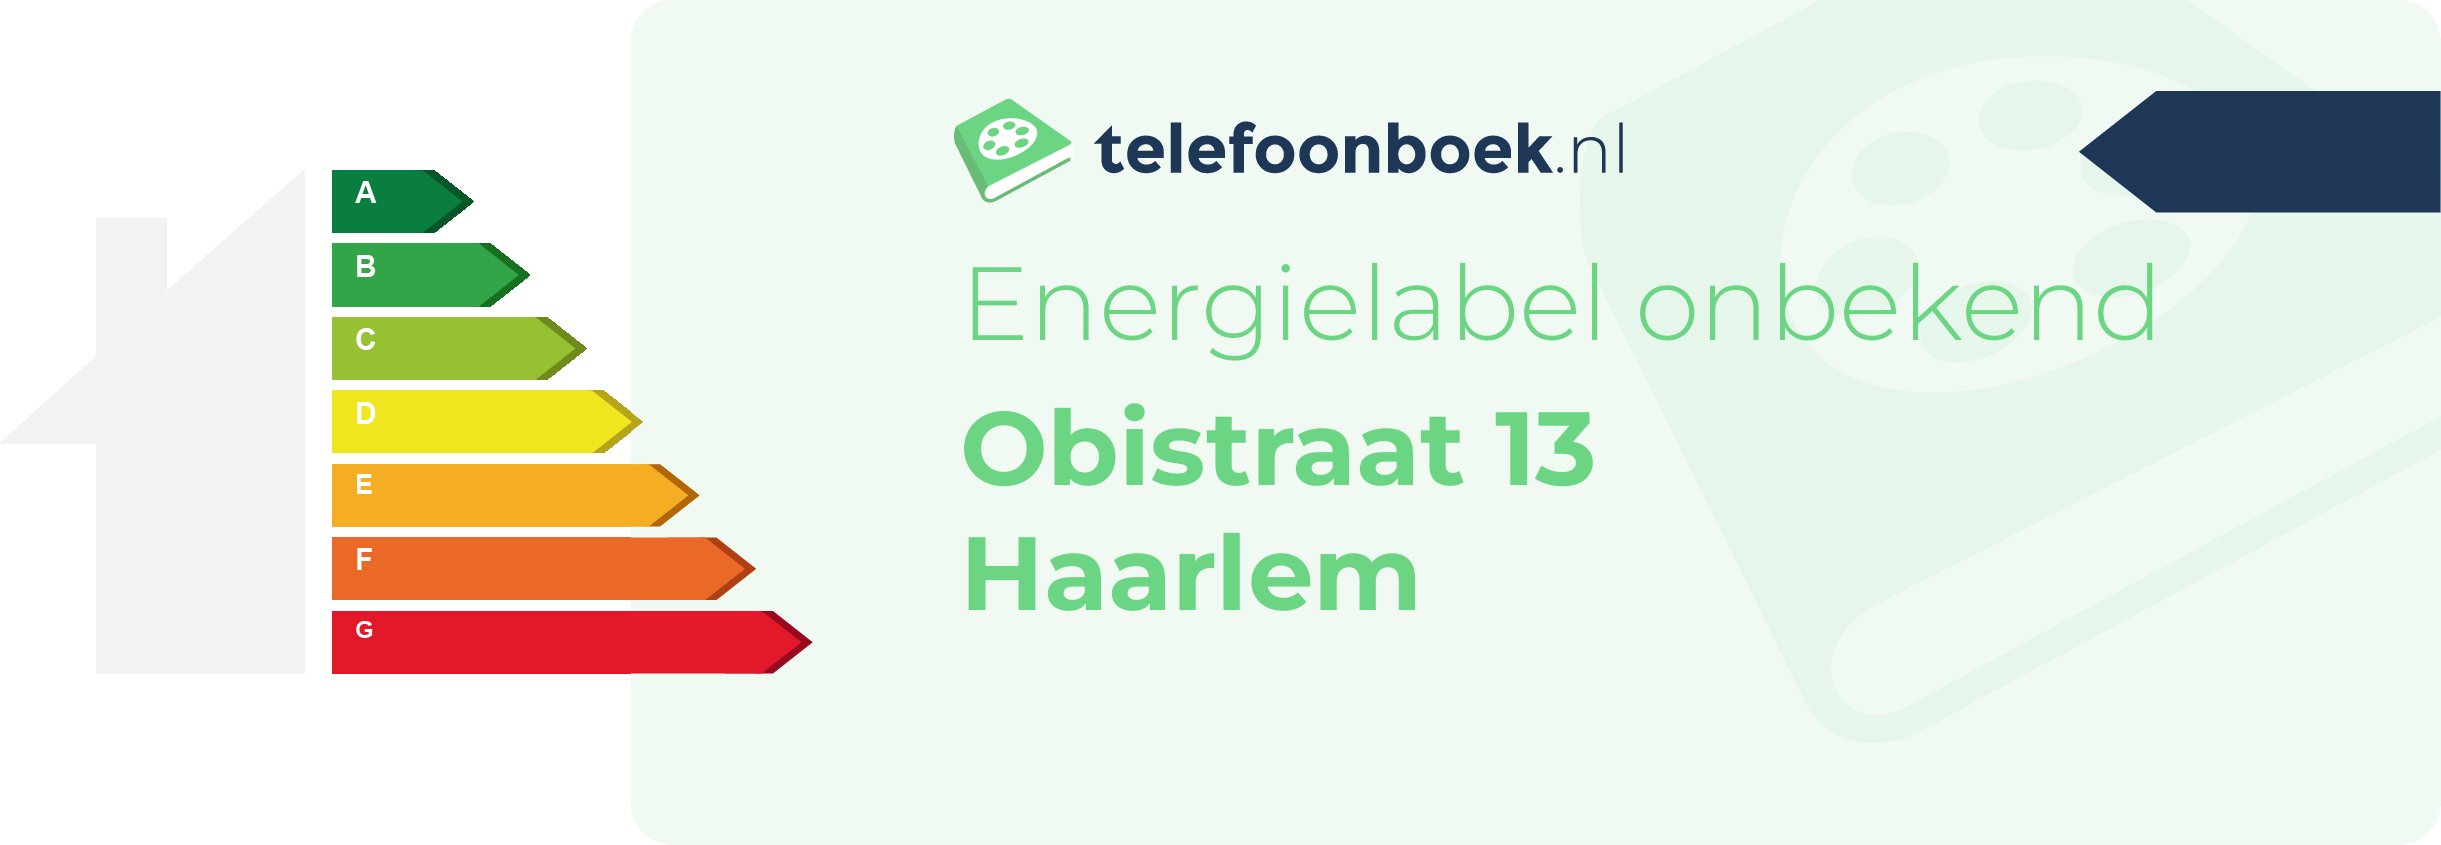 Energielabel Obistraat 13 Haarlem